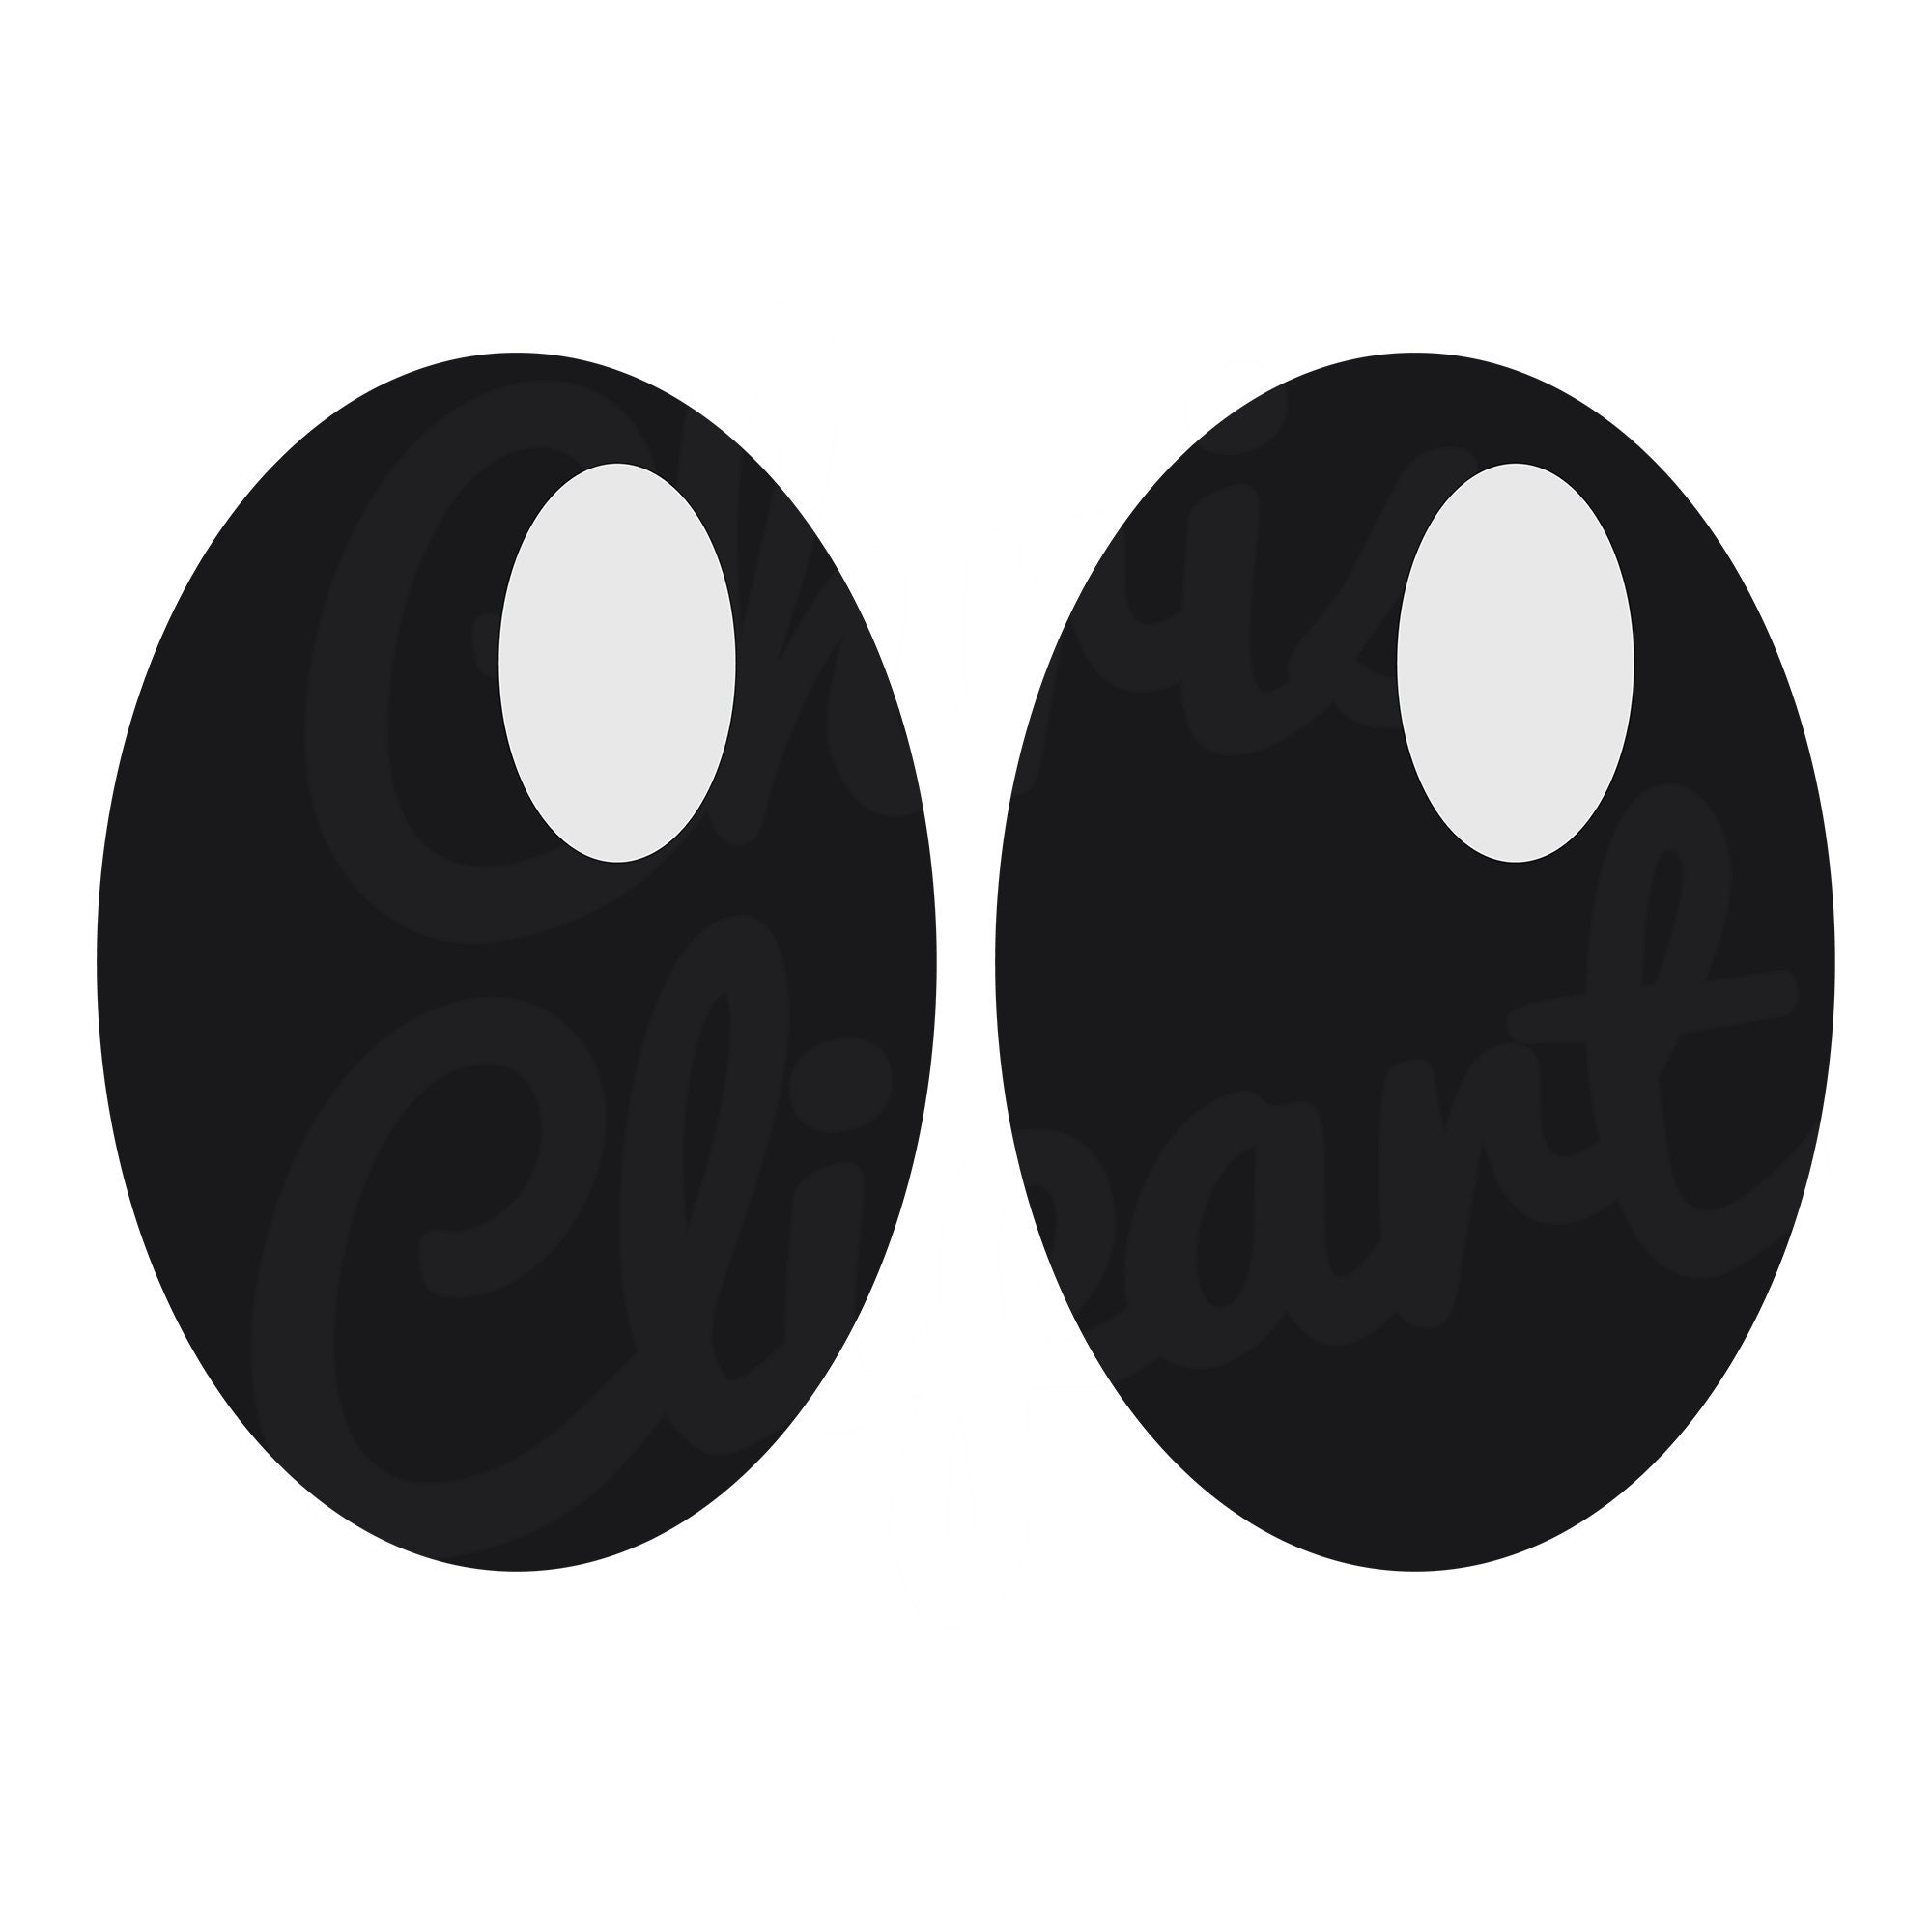 Pac Man Ghost Eyes Template Printable